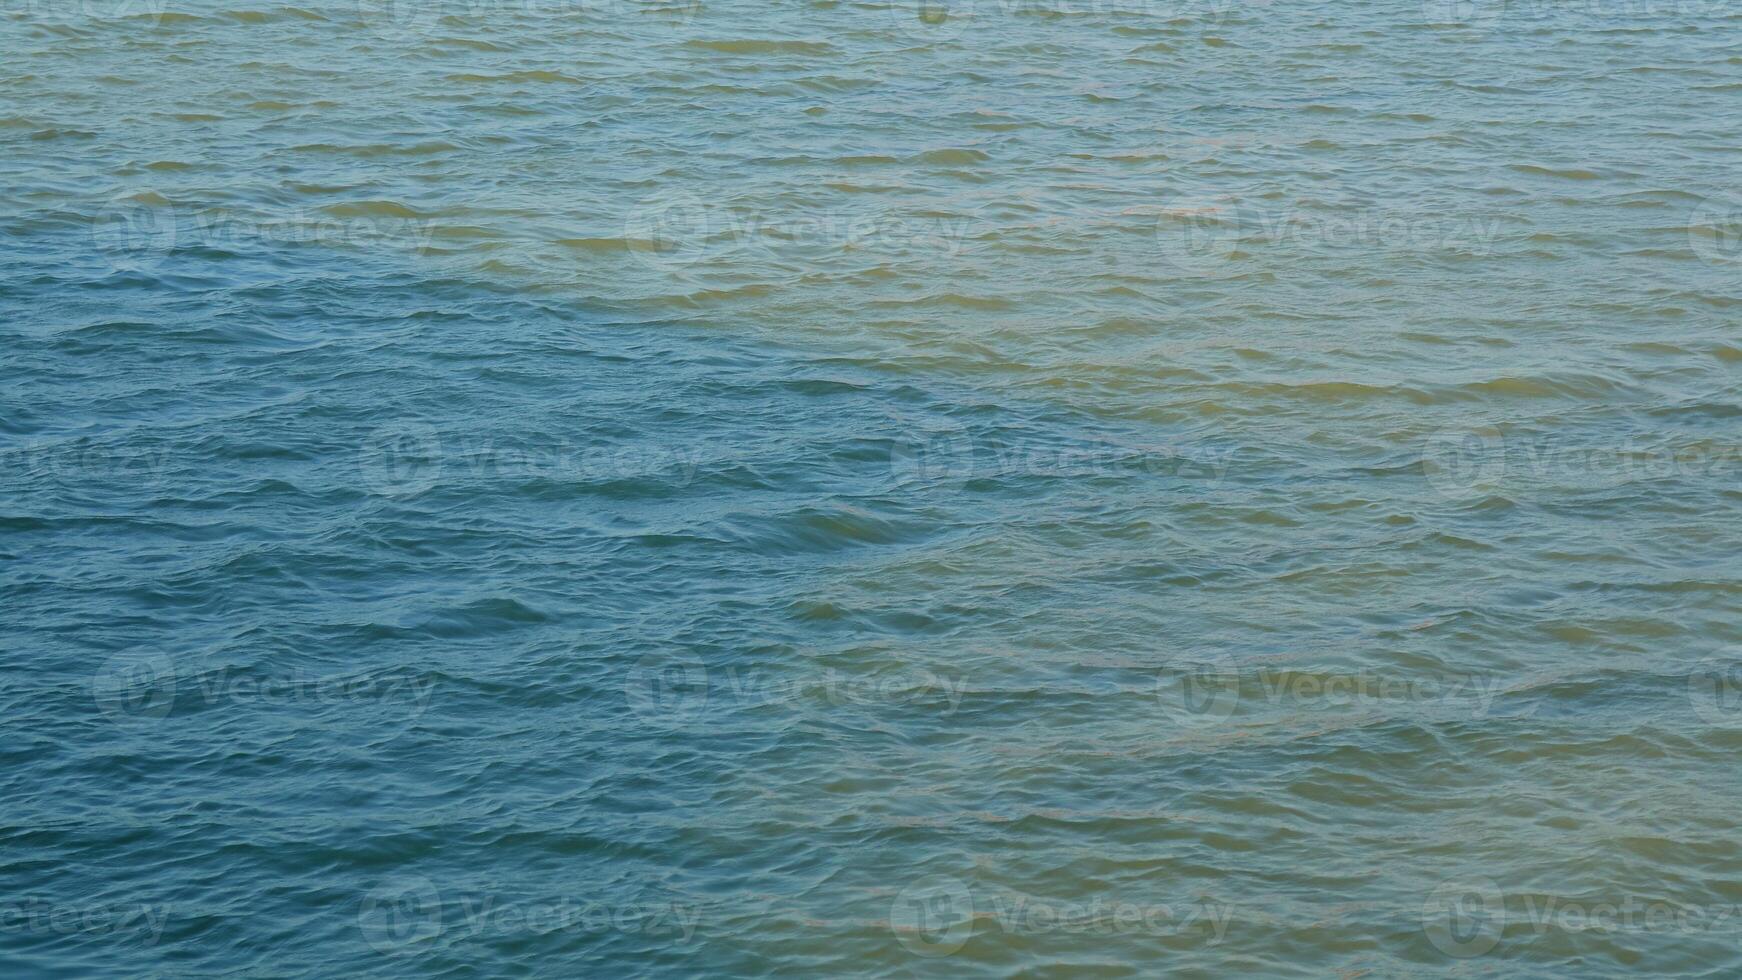 superfície calma da água do rio tropical durante o dia foto